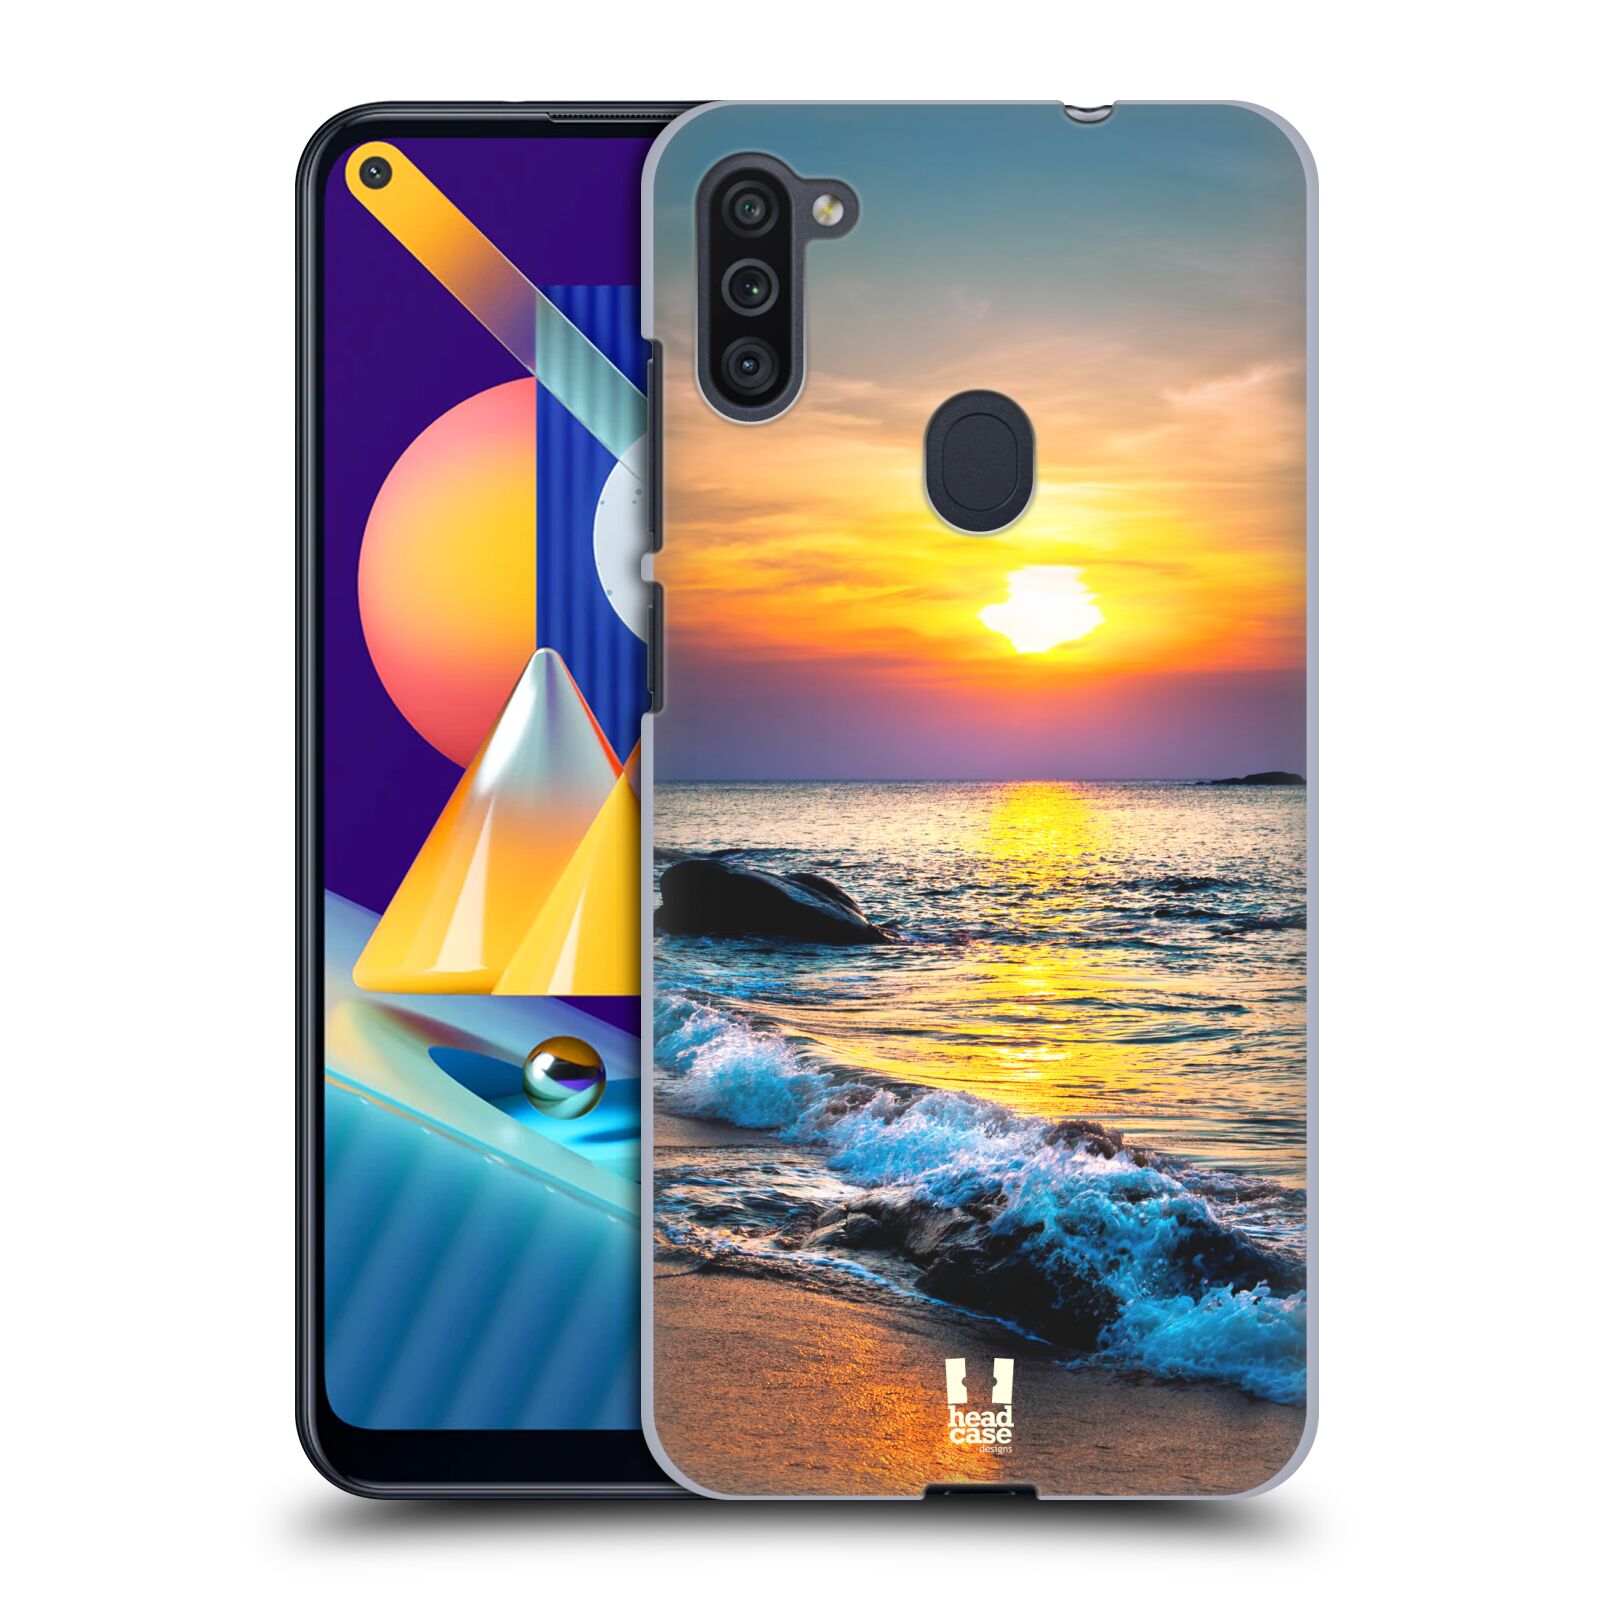 Plastový obal HEAD CASE na mobil Samsung Galaxy M11 vzor Pláže a Moře barevný západ slunce